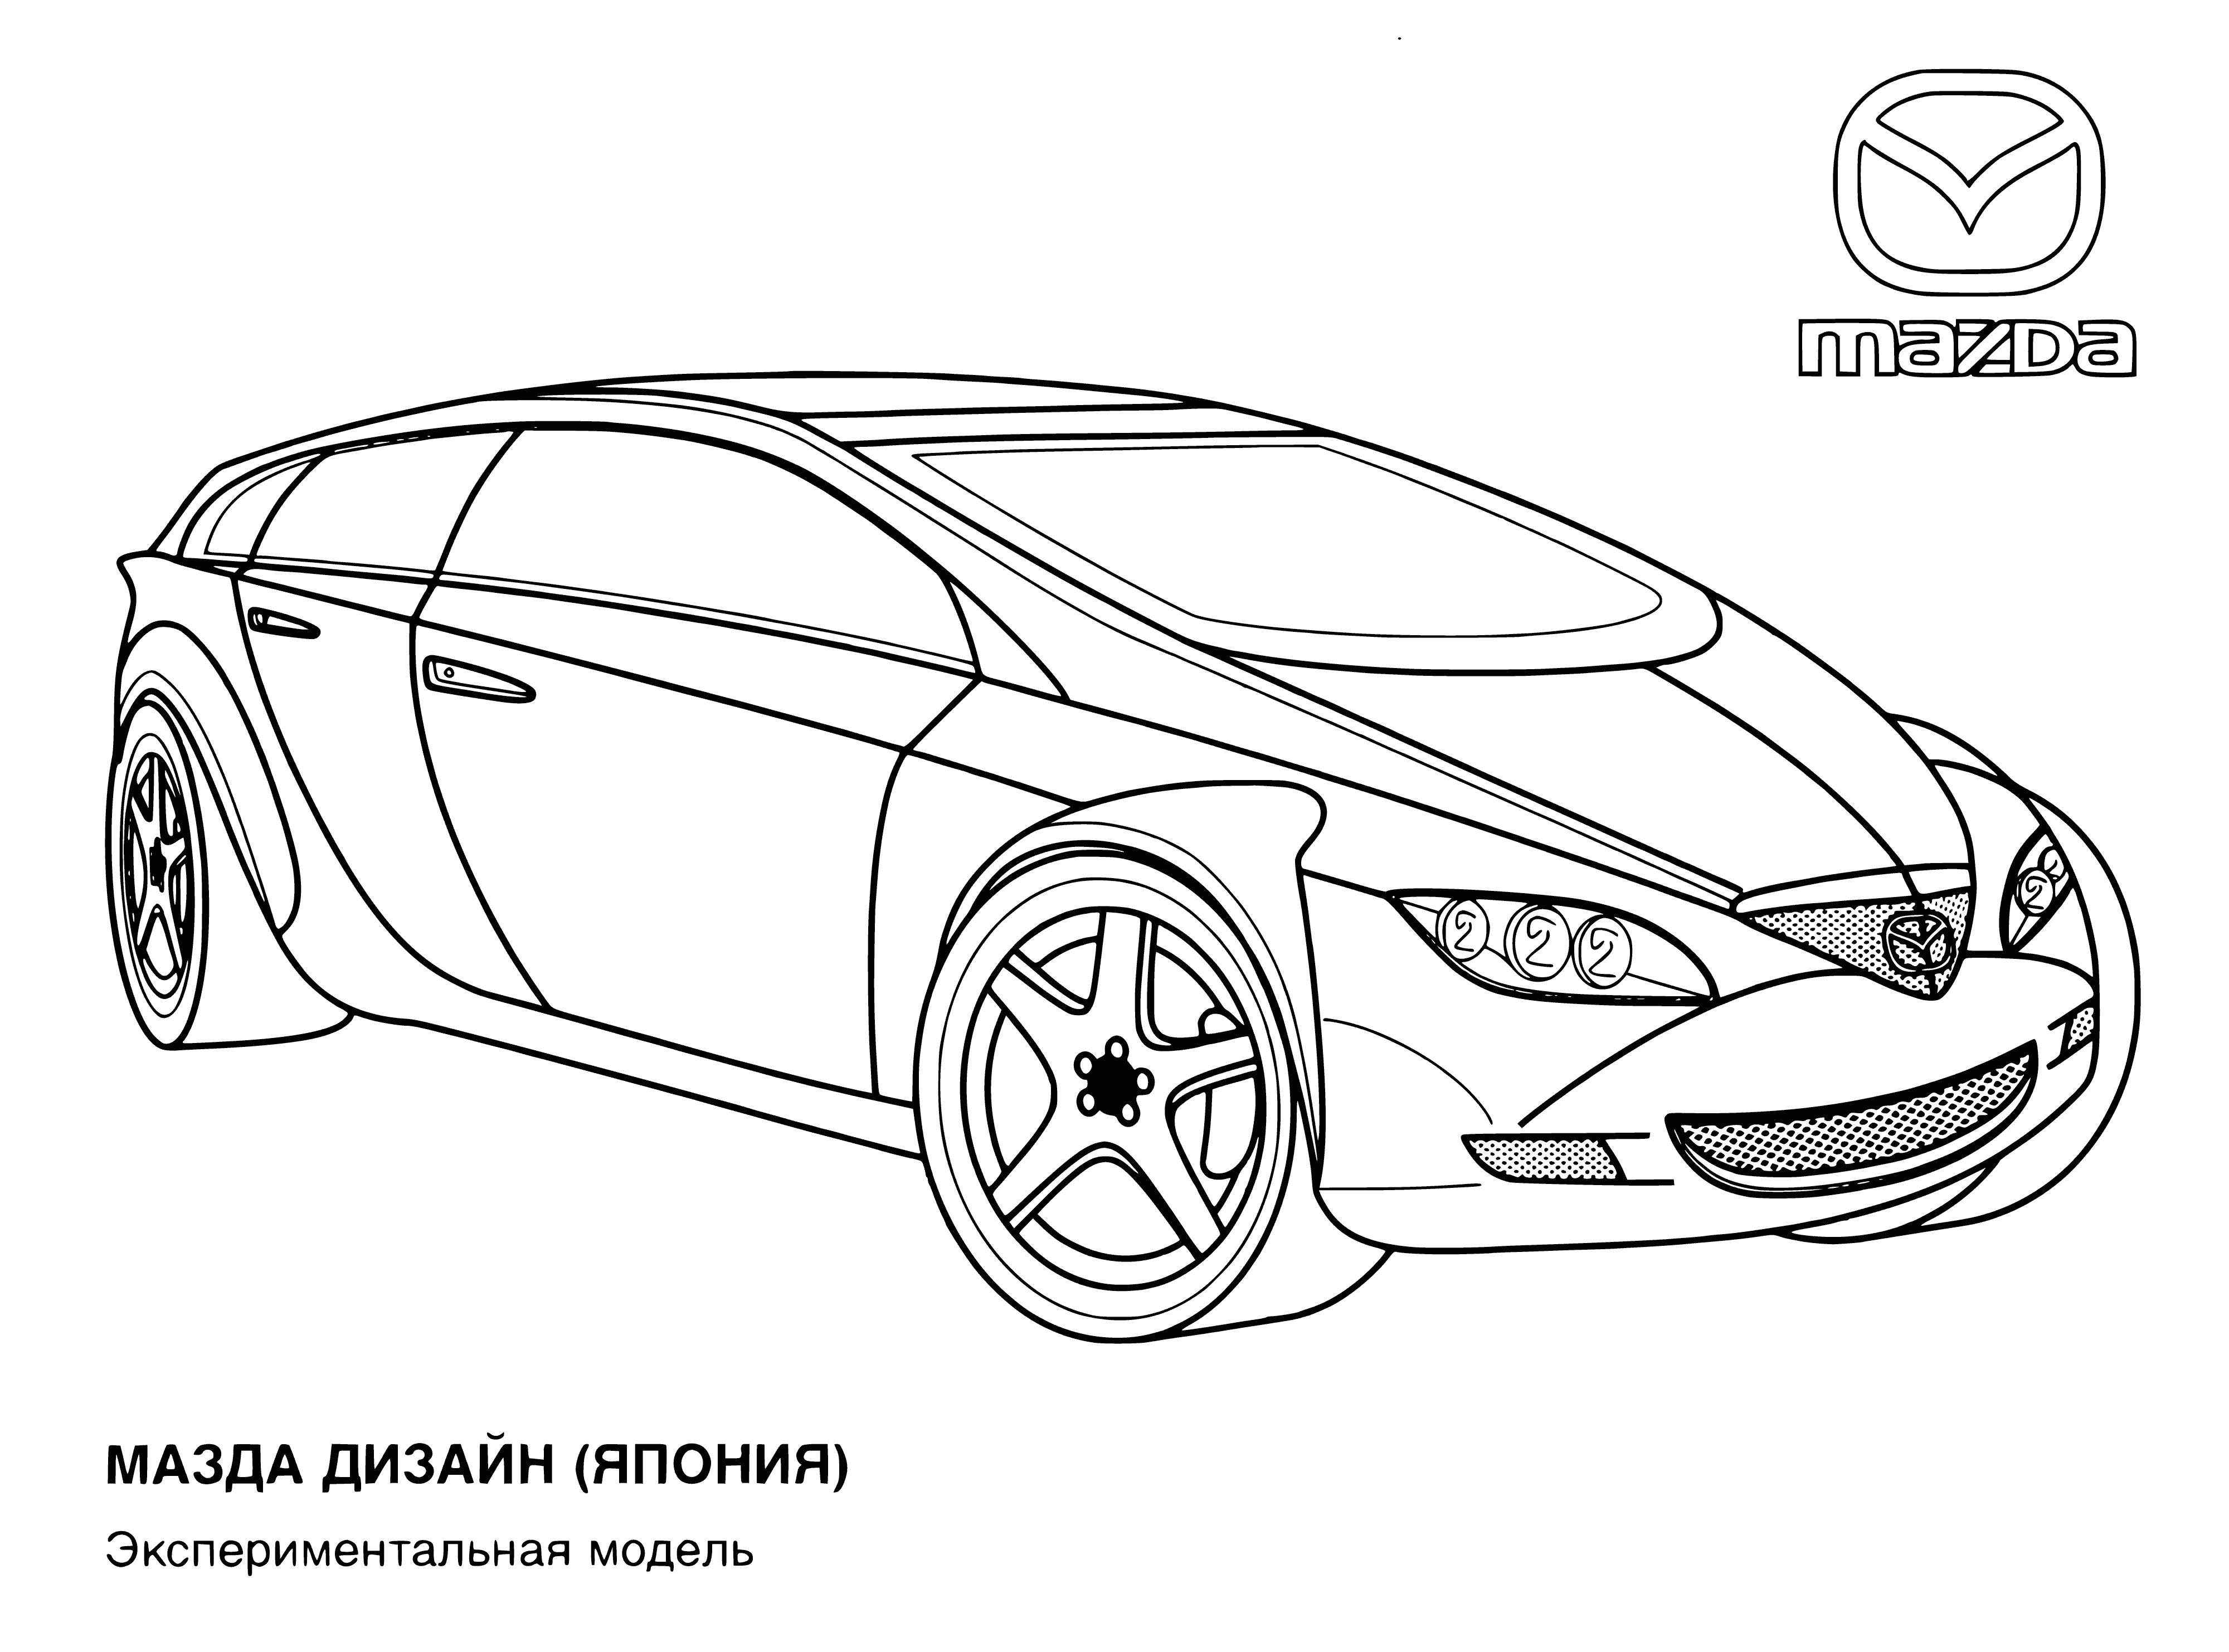 Mazda (Japan) coloring page